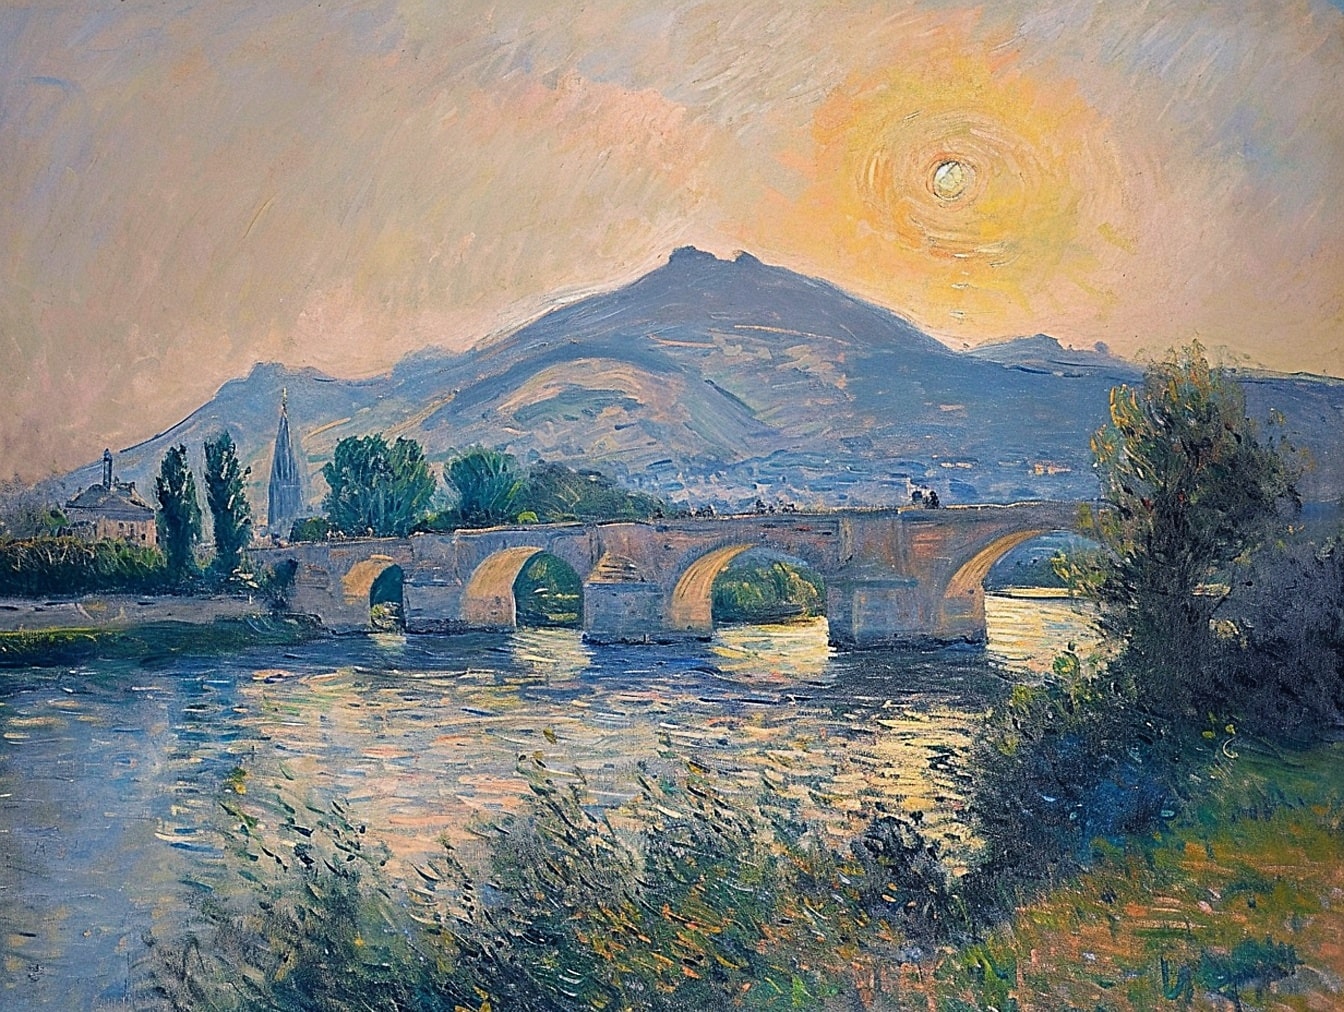 Bức tranh sơn dầu của một cây cầu đá cũ bắc qua sông với hoàng hôn trên những ngọn đồi ở phía sau